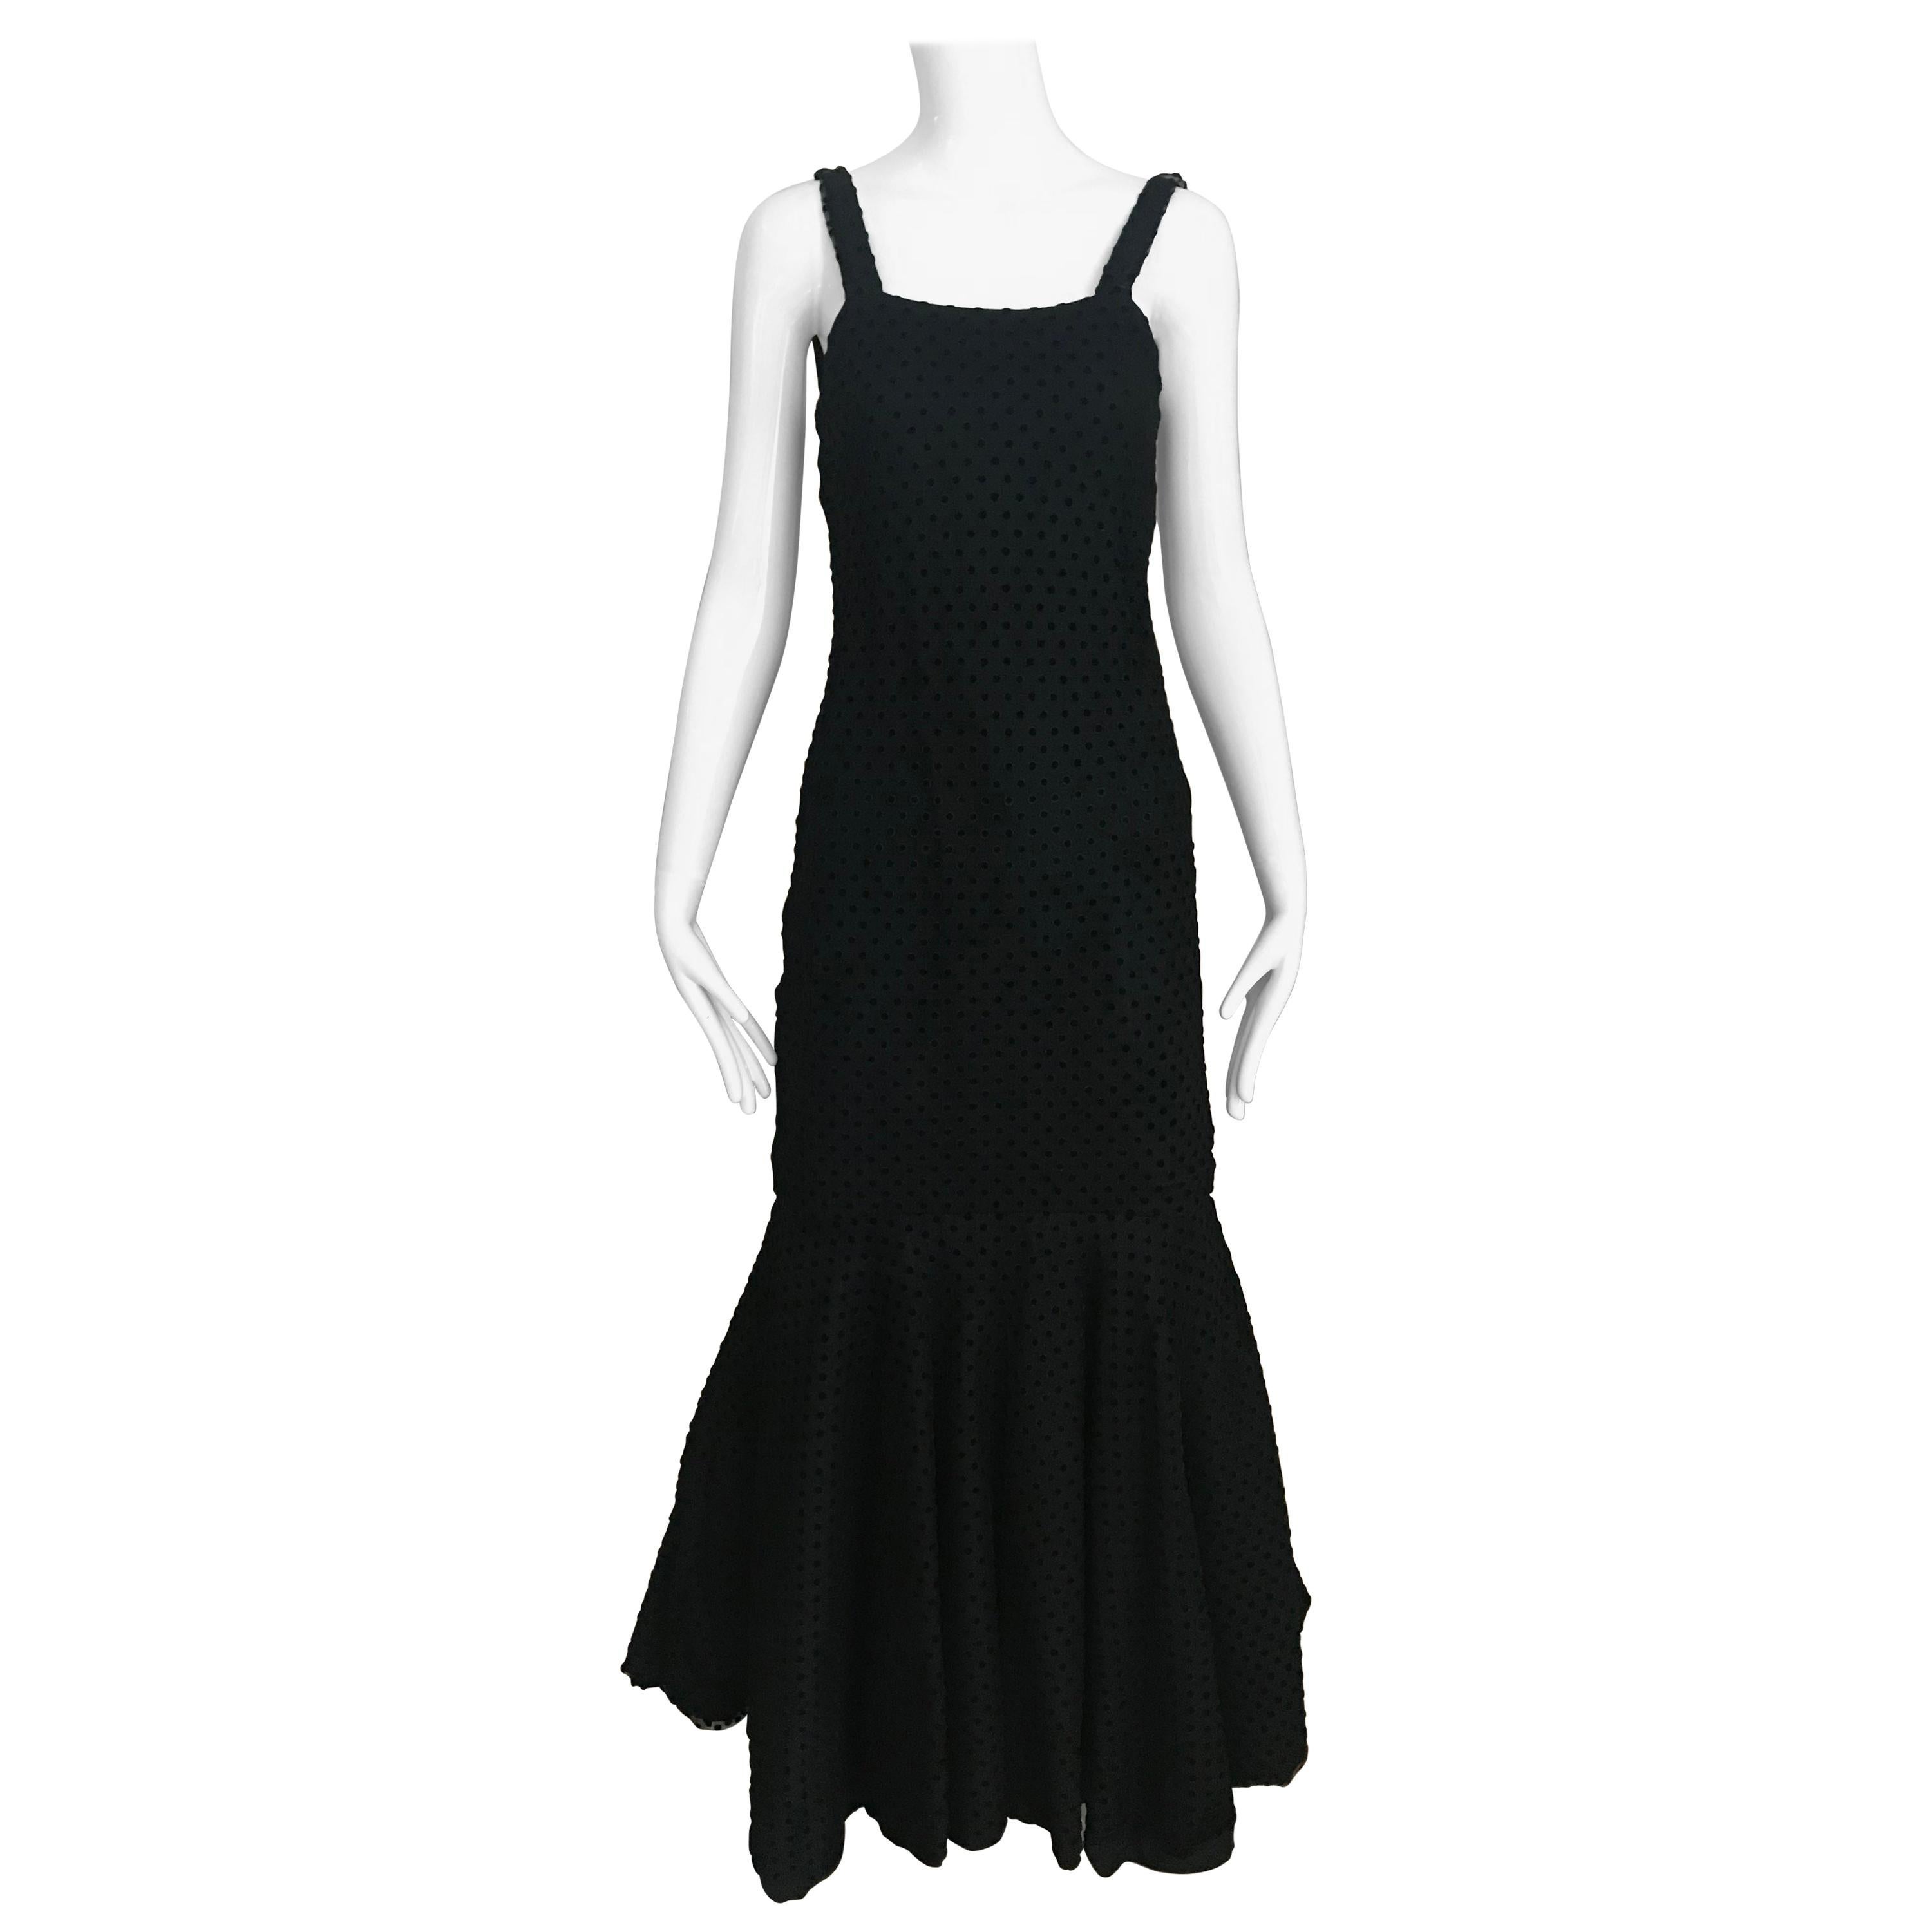 Christian Dior Black Net Dress with Velvet Dot Dress For Sale